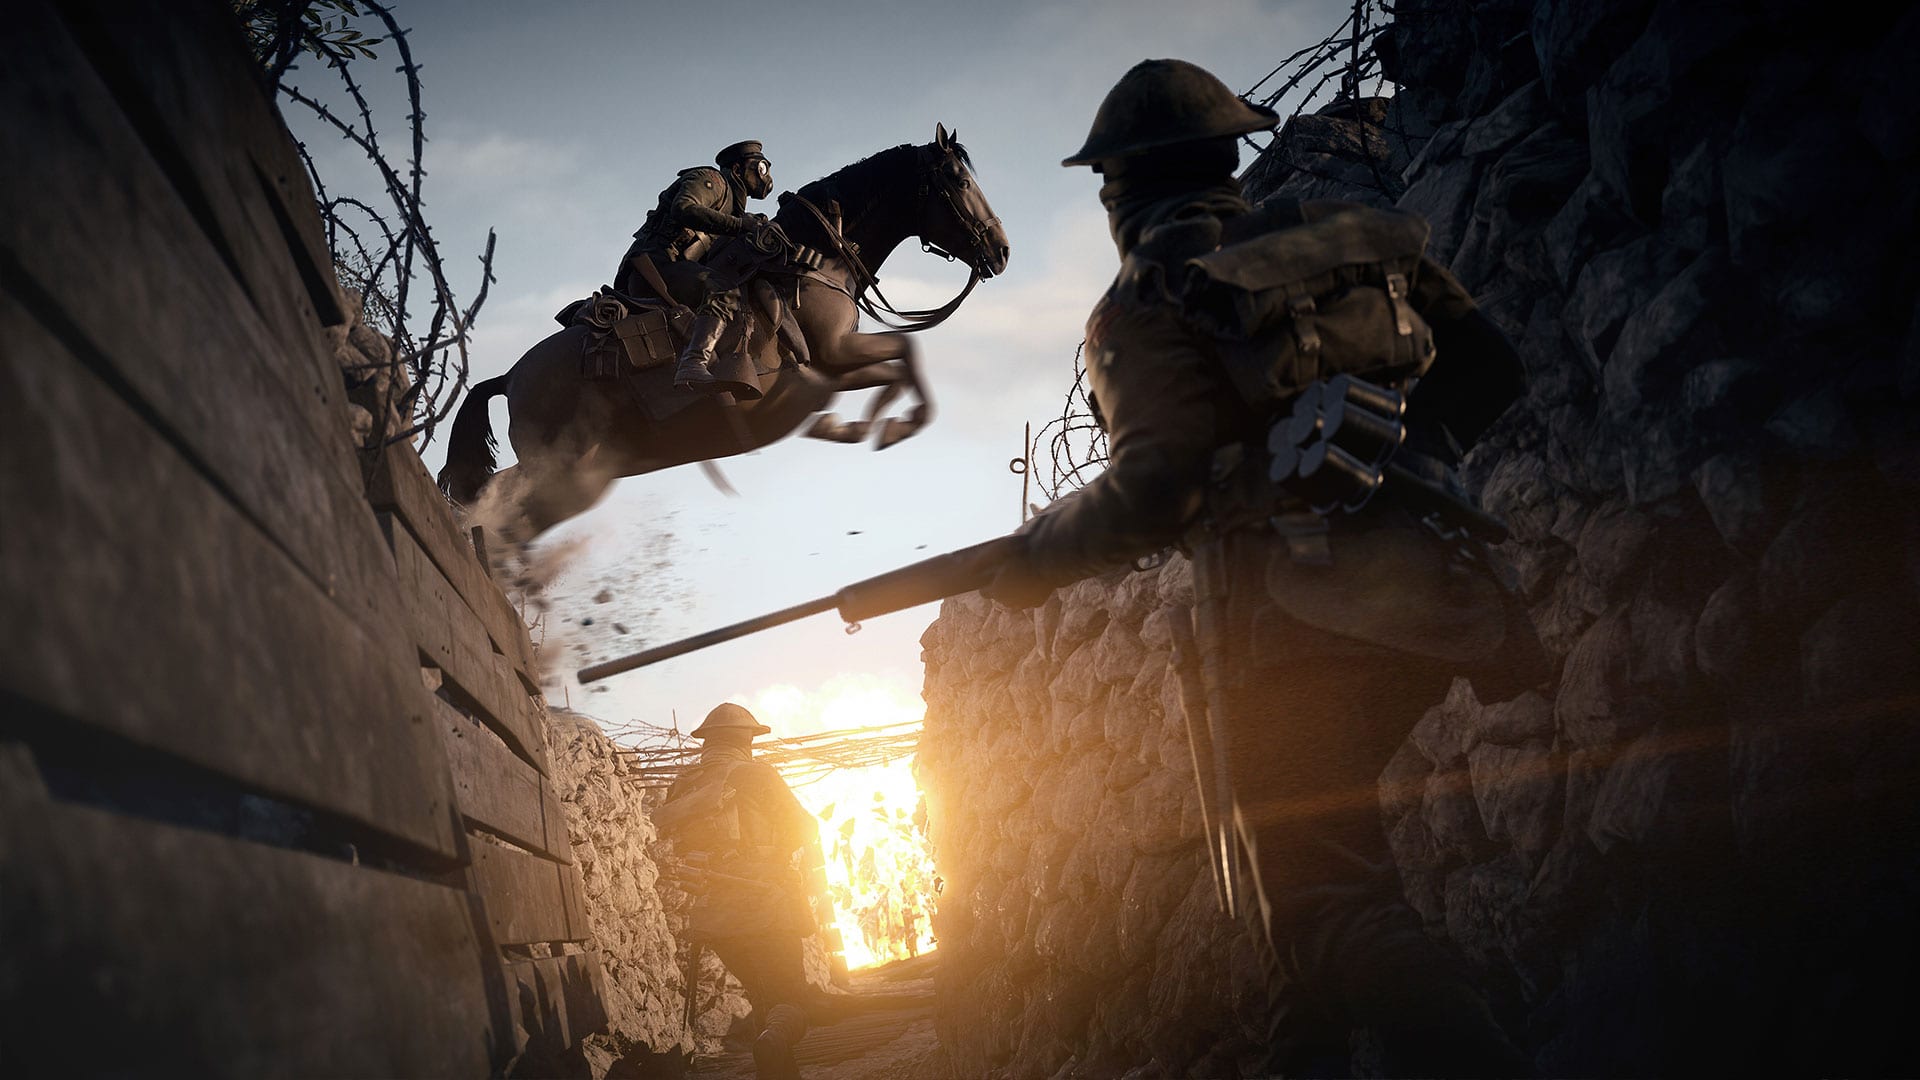 Battlefield 1 Trailer 2 – Official Gameplay Trailer E3 (2016)